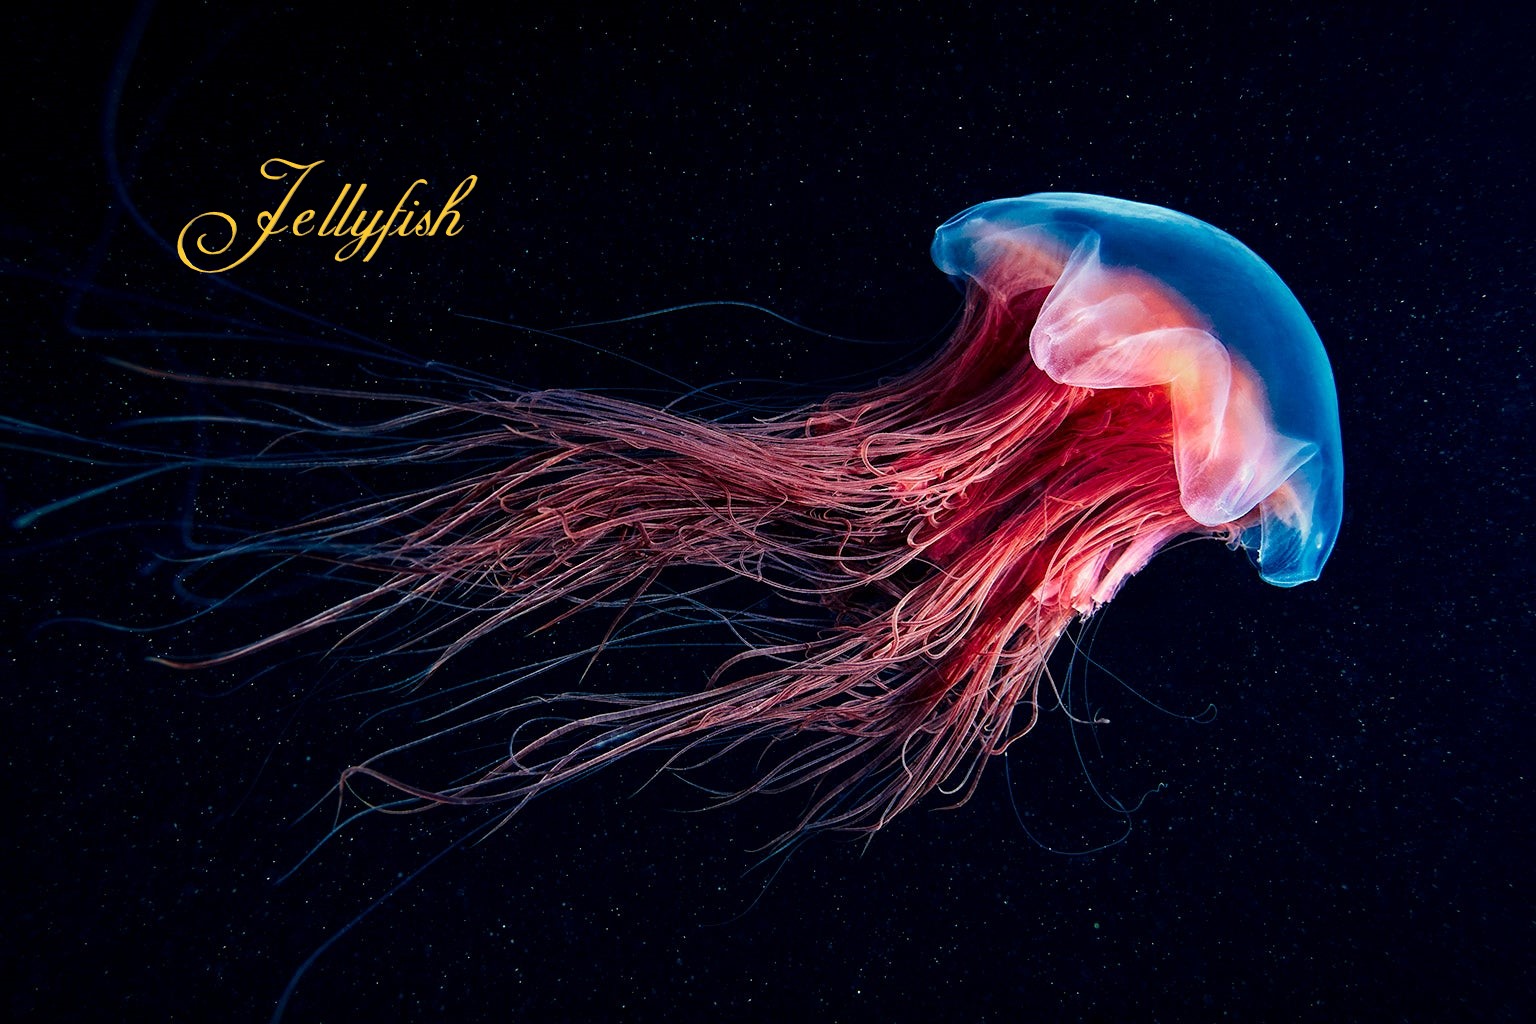 hình ảnh con sứa biển